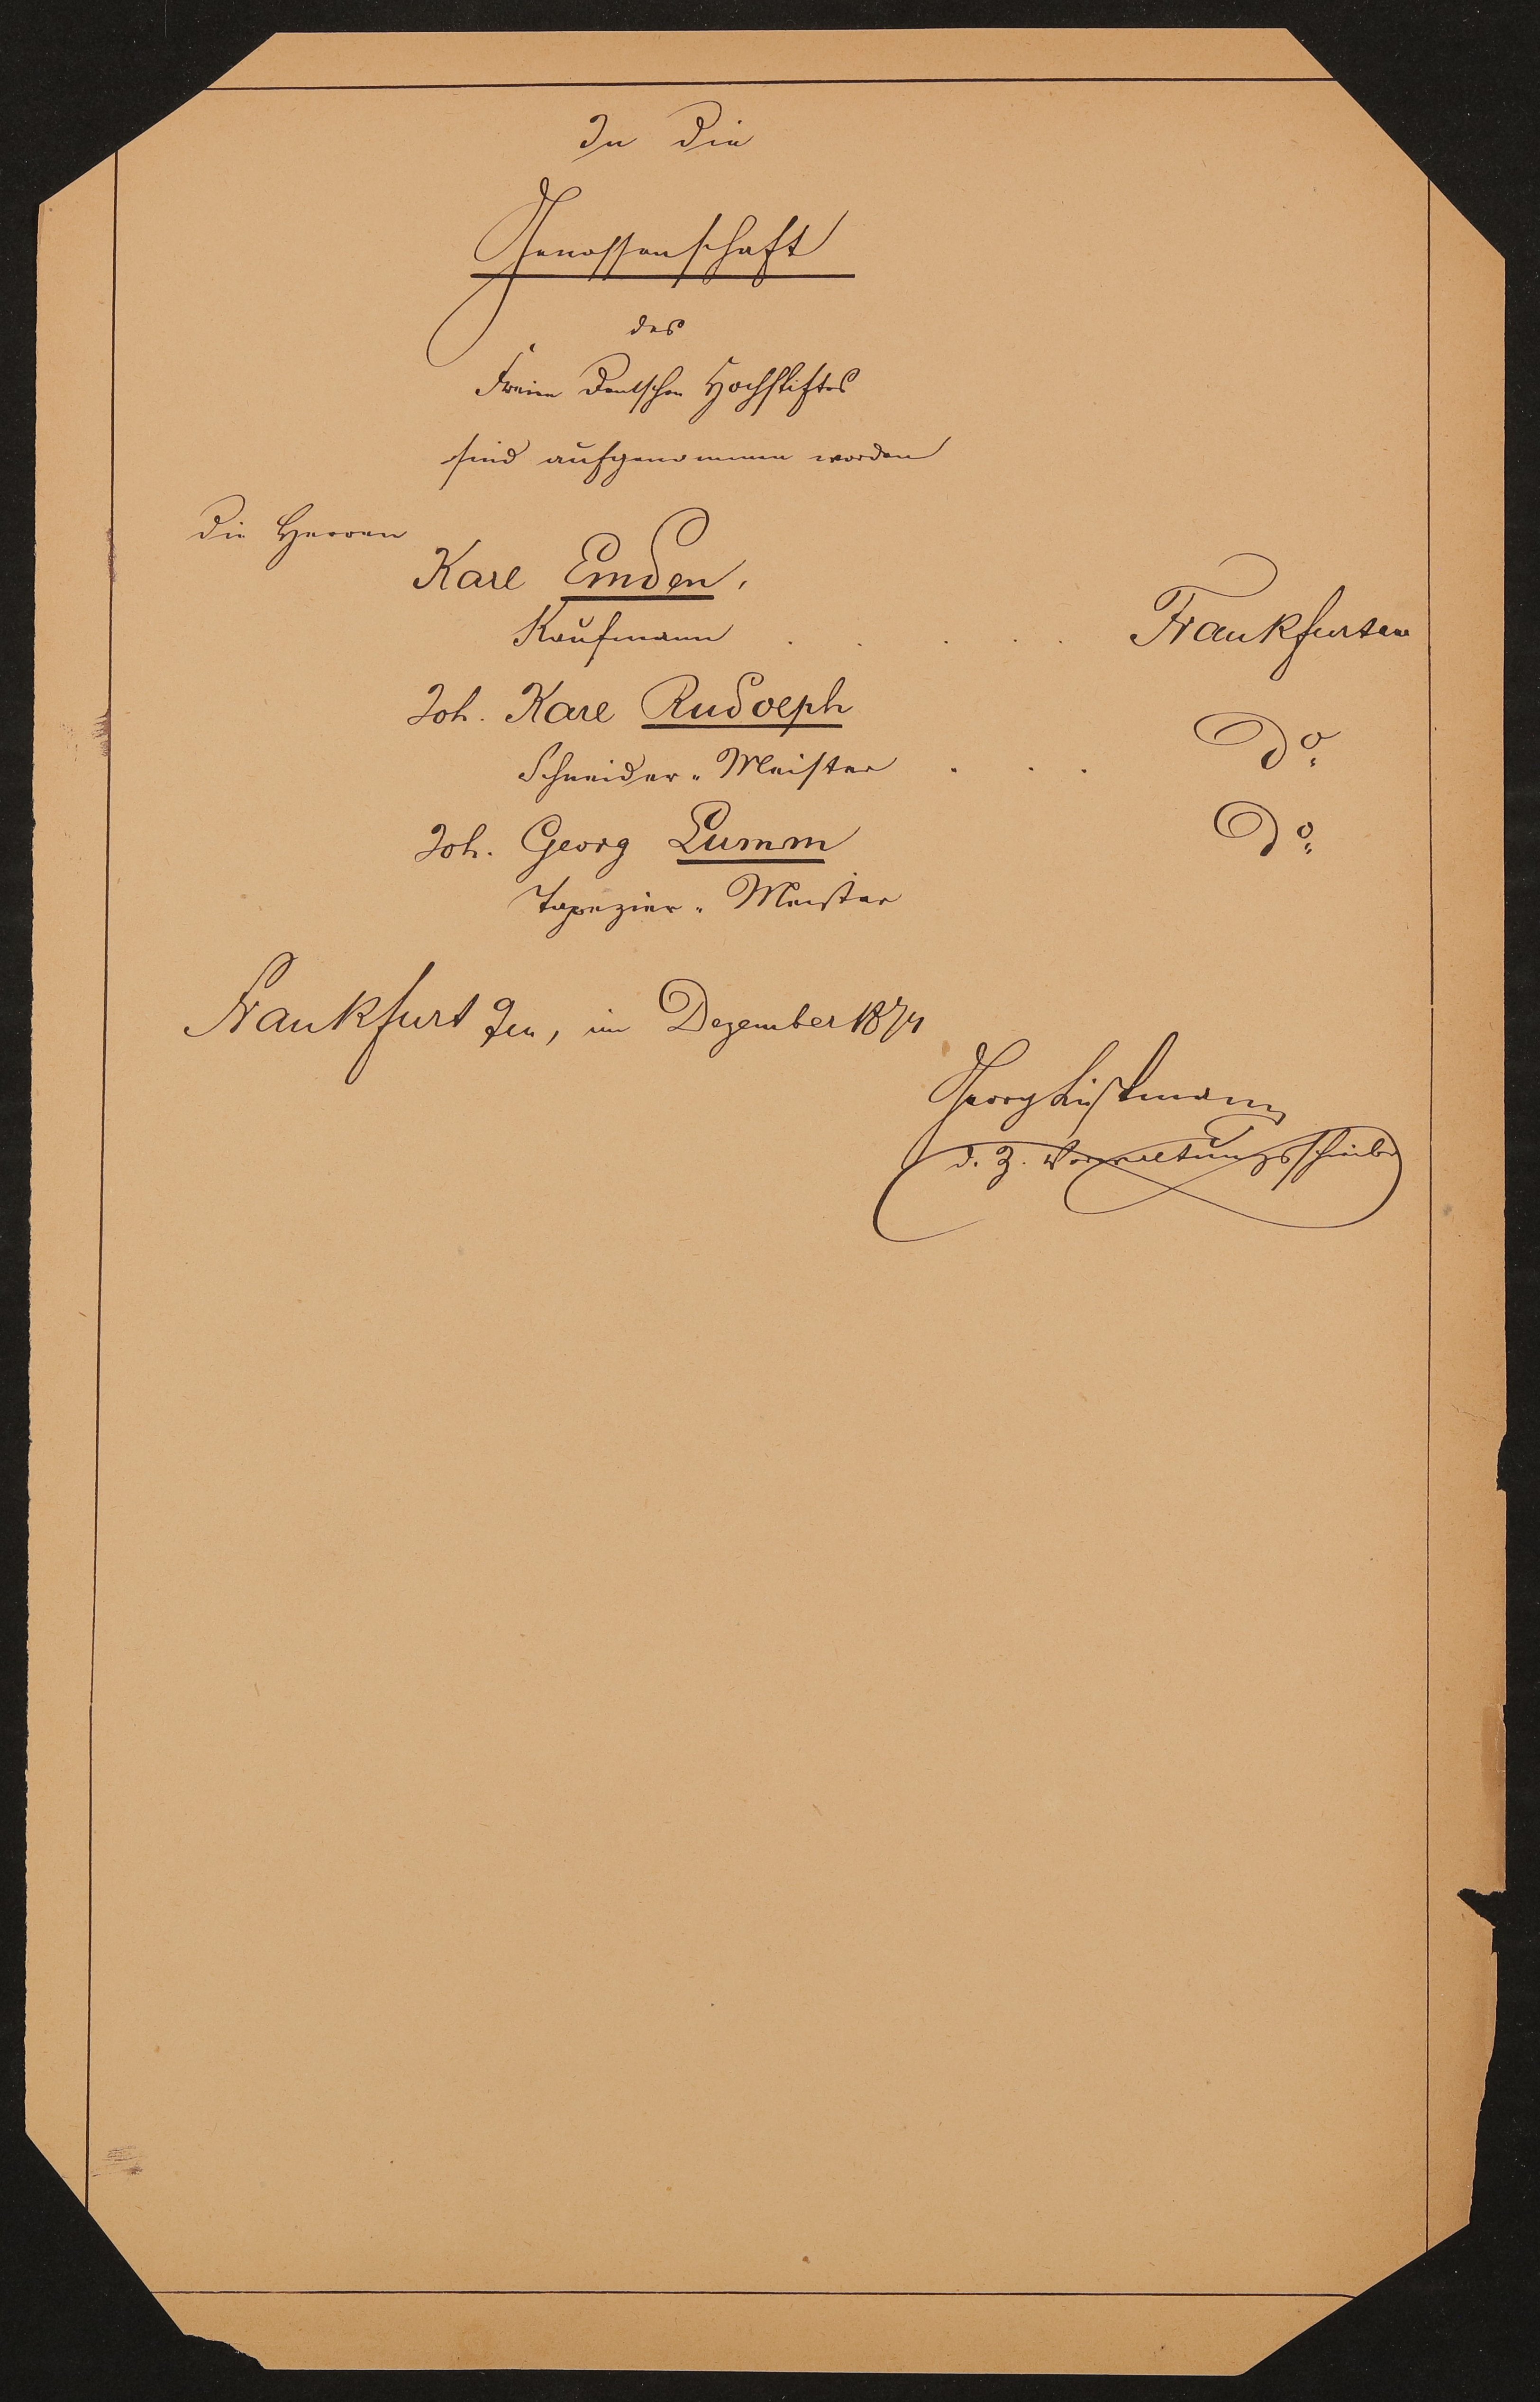 Liste "In die Genossenschaft des Freien Deutschen Hochstiftes sind aufgenommen worden" (12.1874) (Freies Deutsches Hochstift / Frankfurter Goethe-Museum Public Domain Mark)